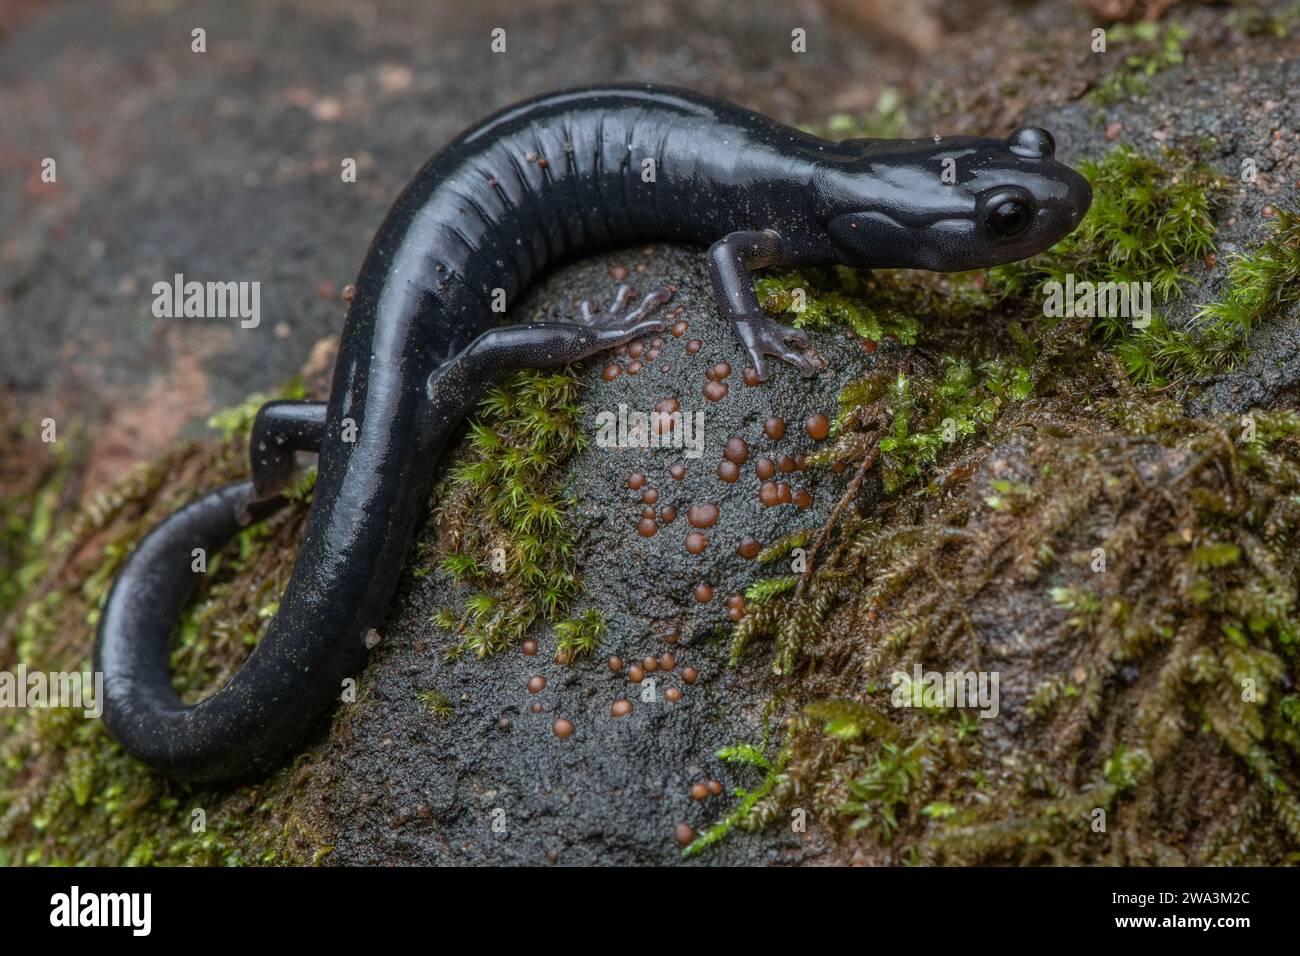 Un macro primo piano della salamandra nera di Santa Cruz (Aneides niger), una specie anfibia minacciata endemica dell'area della baia di San Francisco in California. Foto Stock